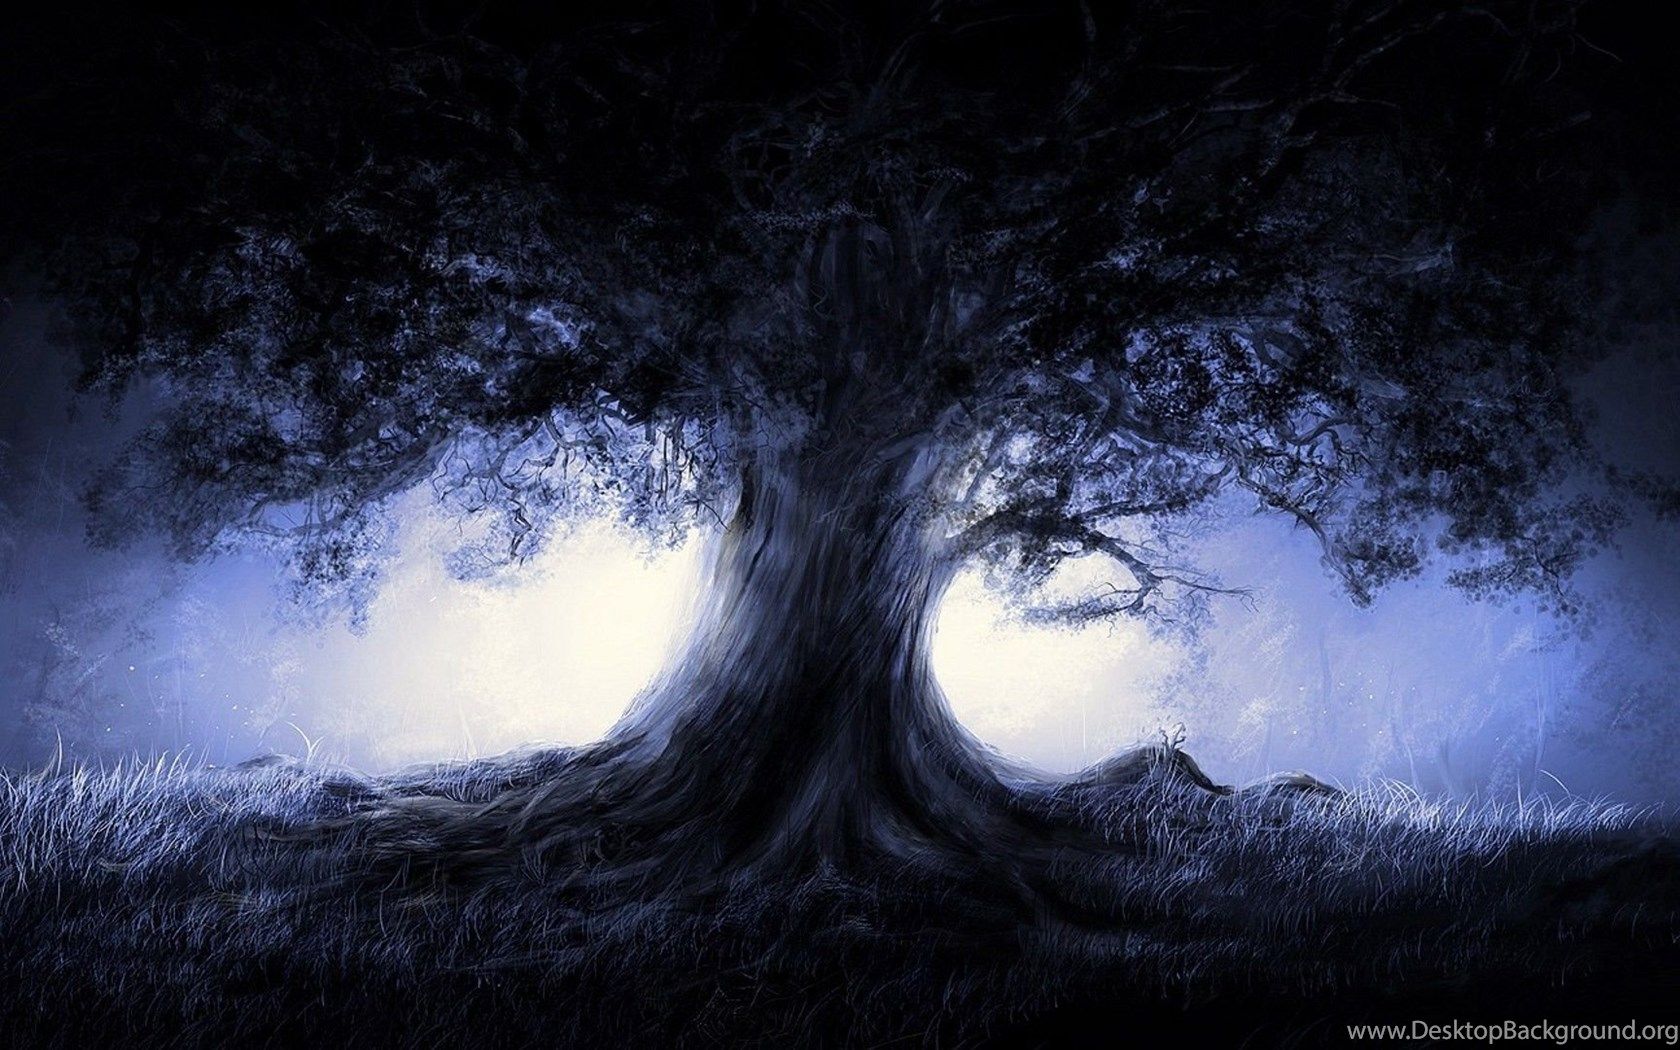 Wallpaper Anime Landscape Nature Blue Landscapes Trees Dark Night. Desktop Background